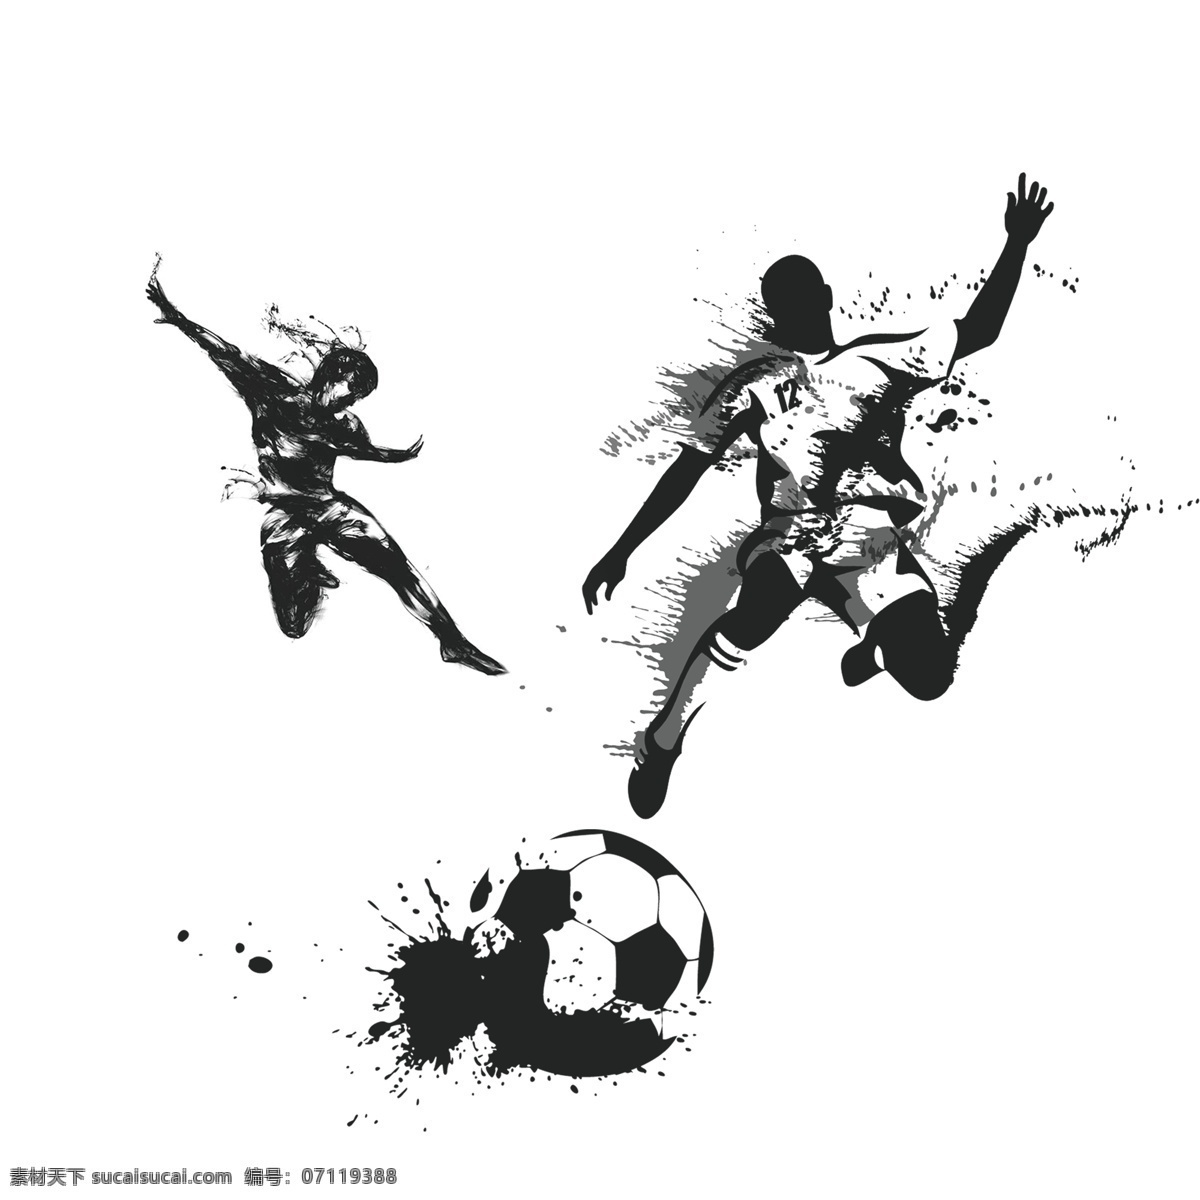 2018 足球 世界杯 人物 踢球 造型 水墨 激情世界杯 体育 竞技 运动